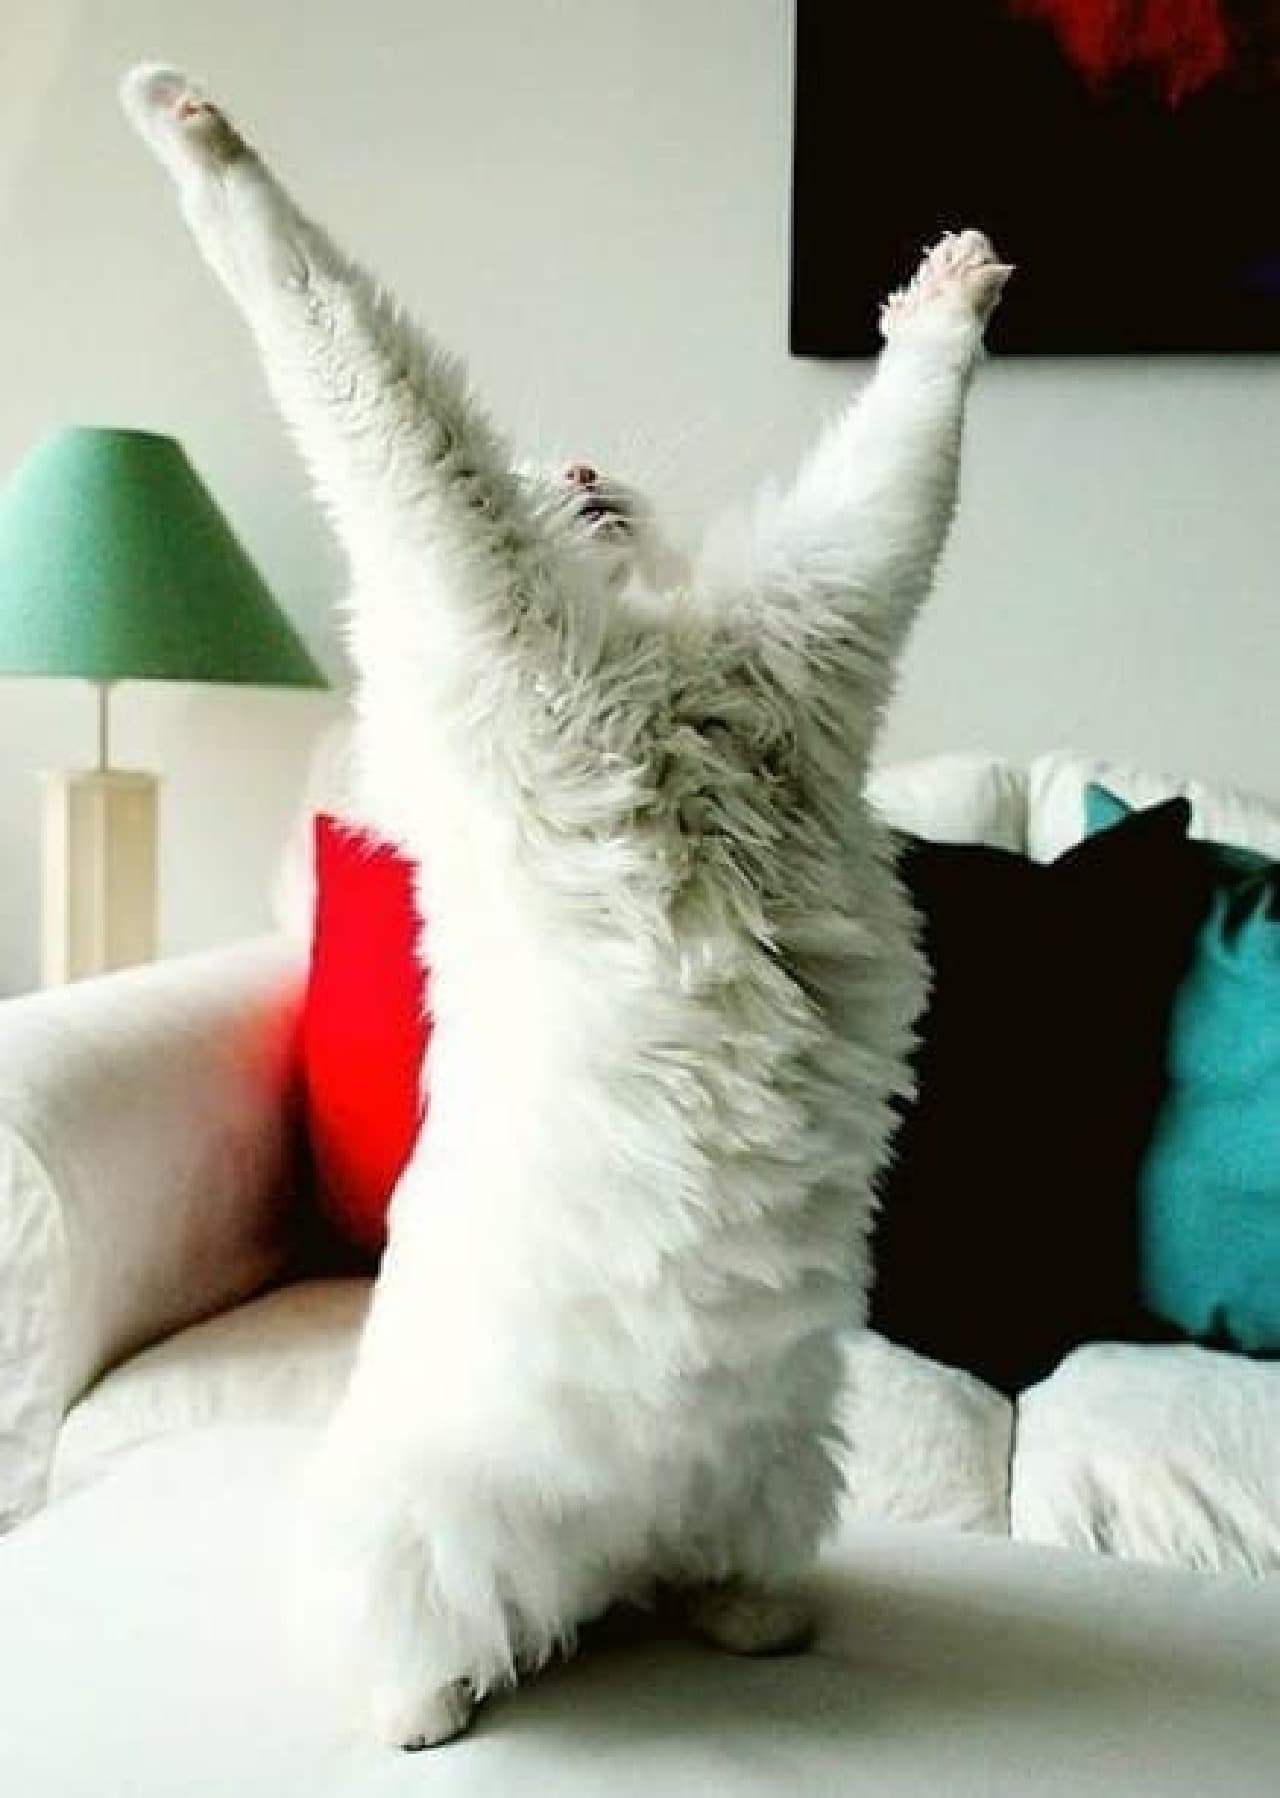 Image of a rejoicing cat